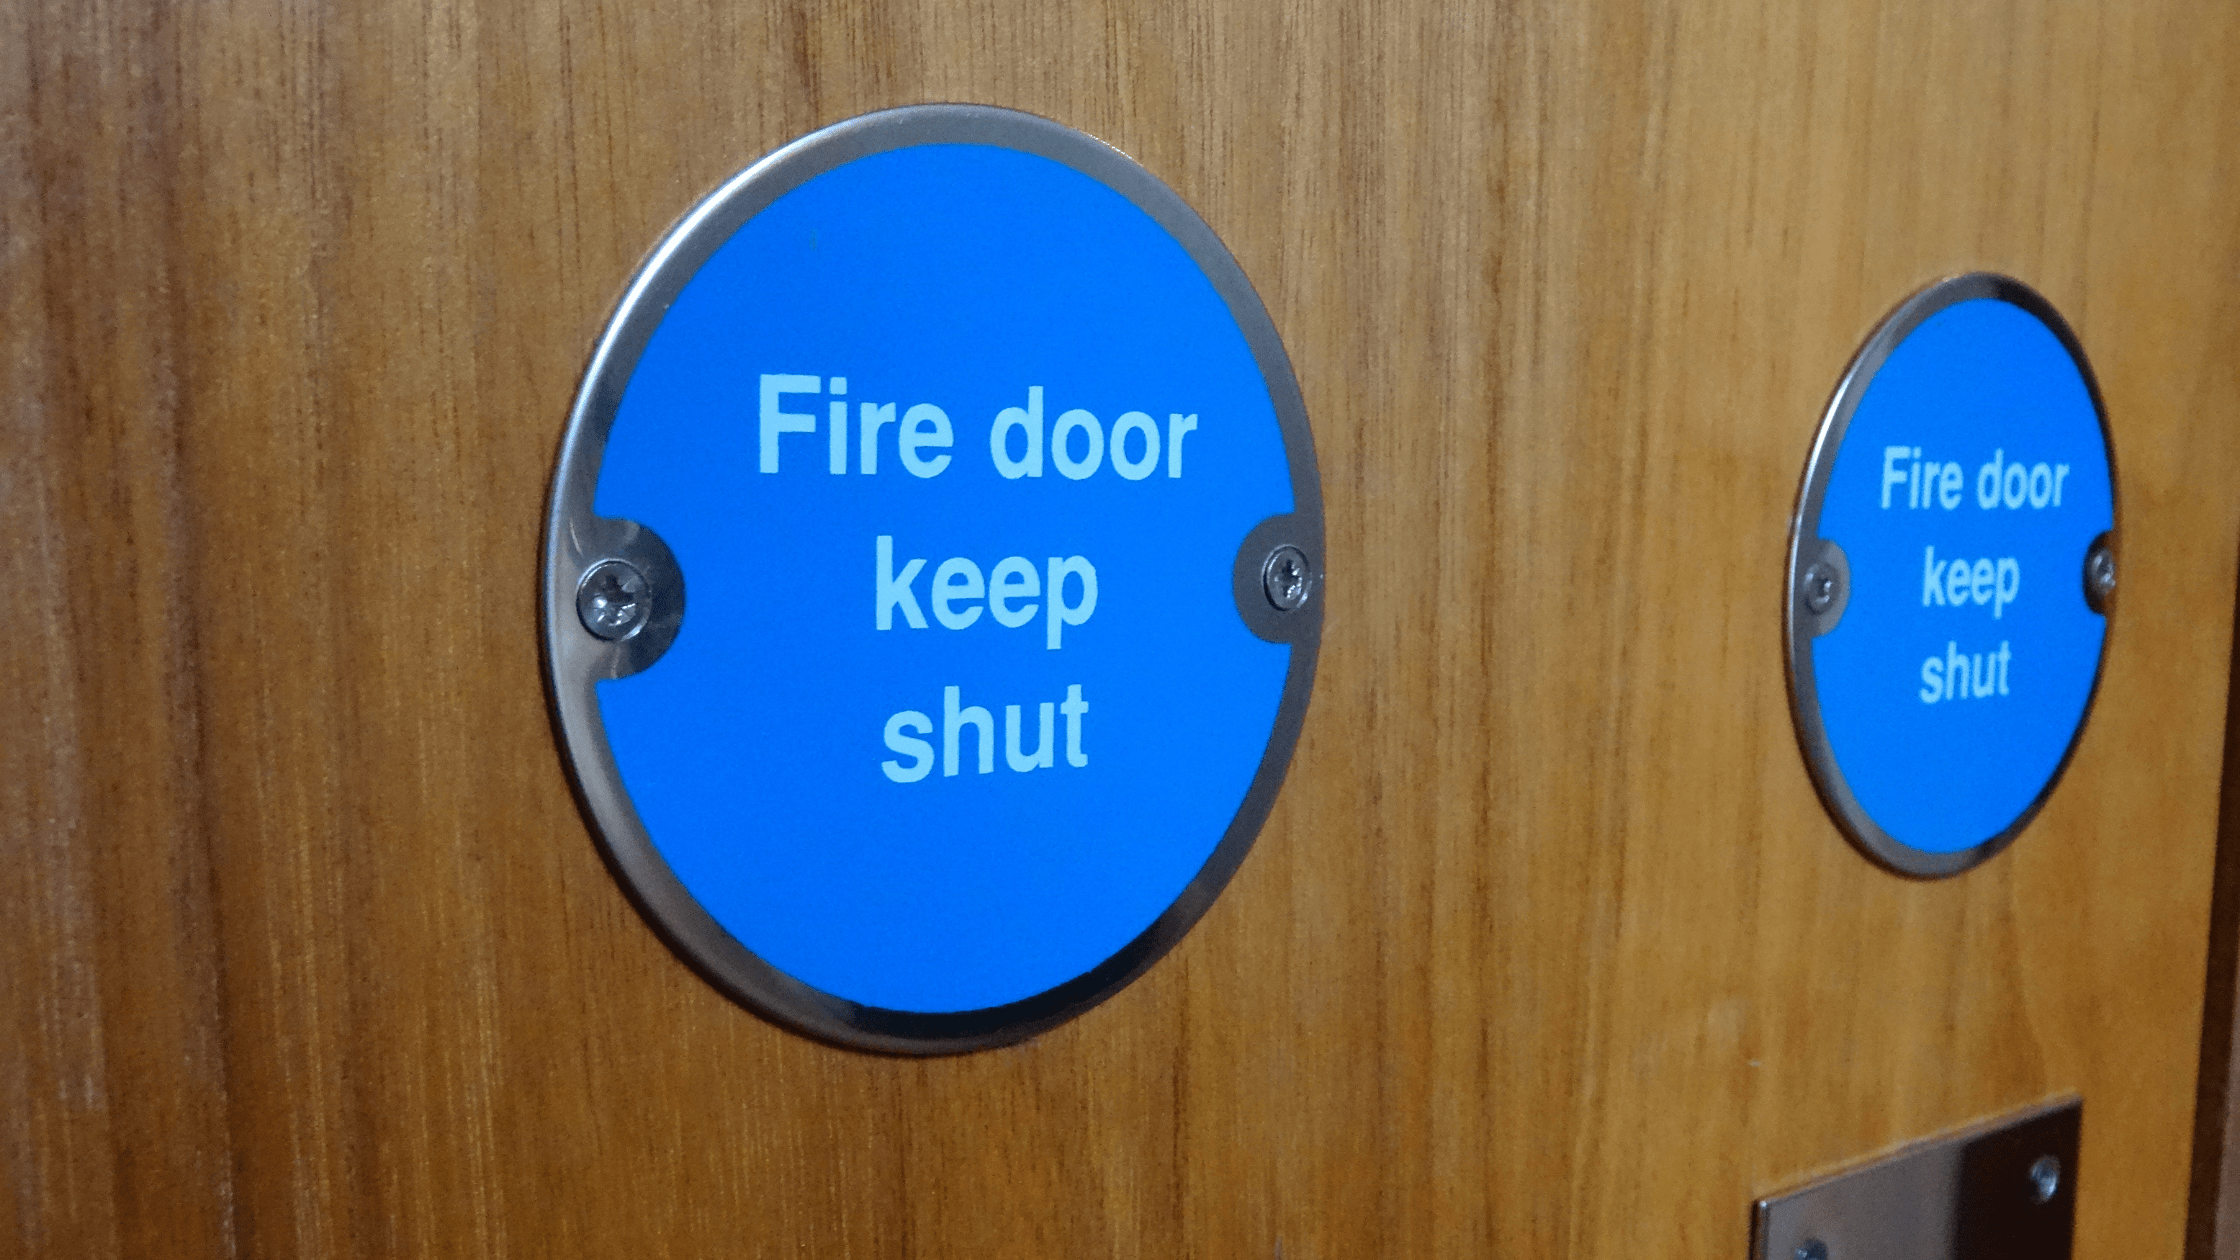 Fire door safety